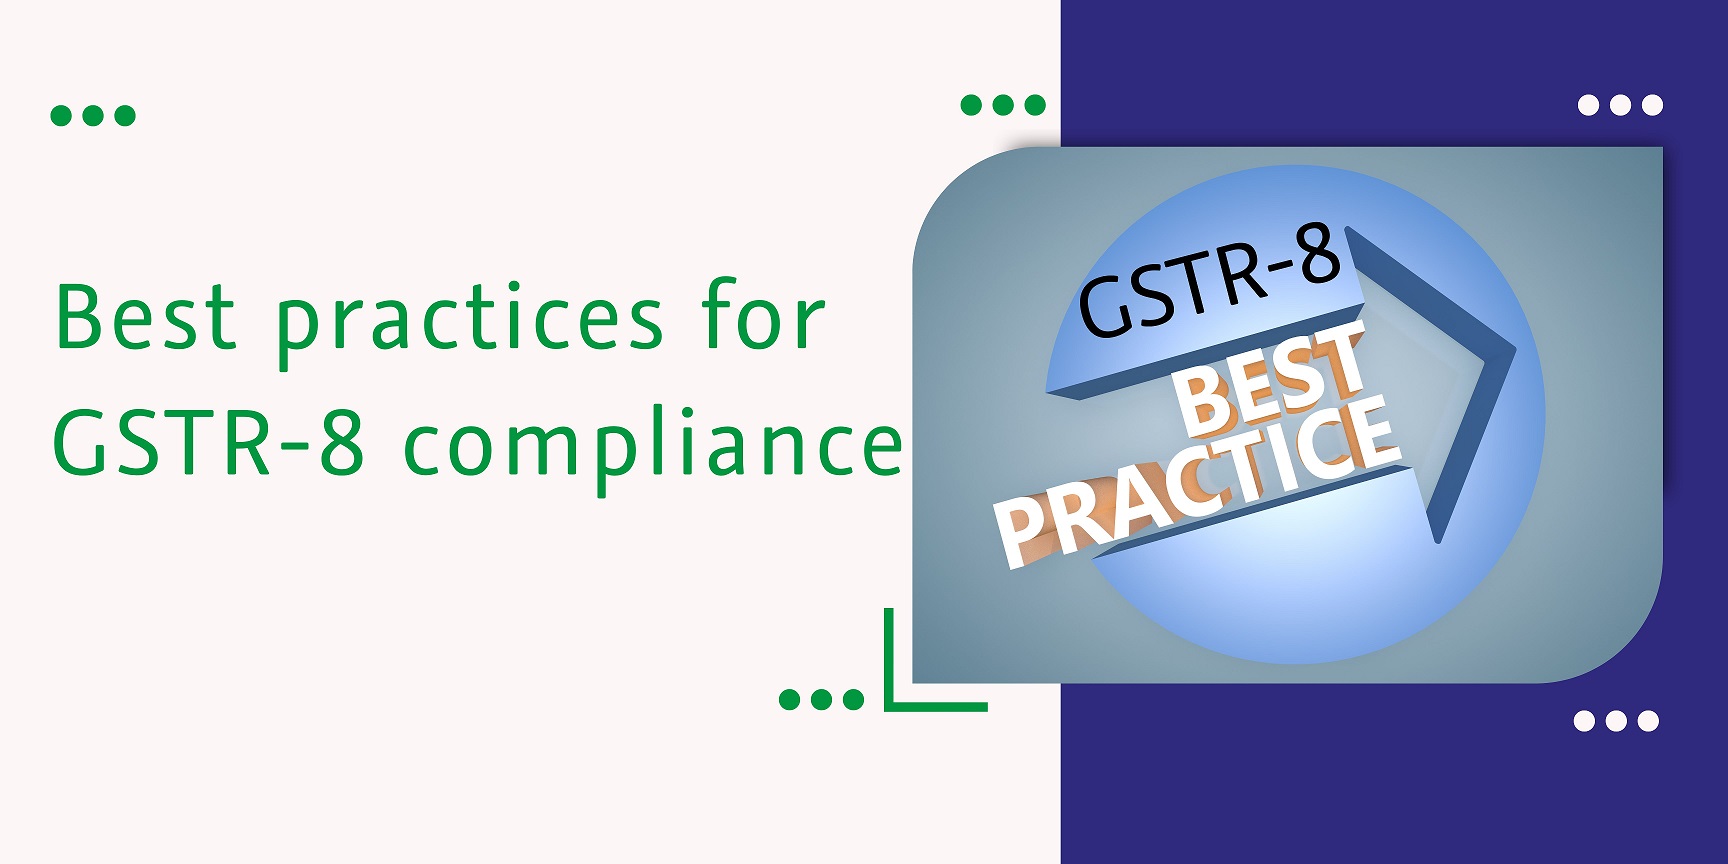 CaptainBiz: Best Practices for GSTR-8 compliance